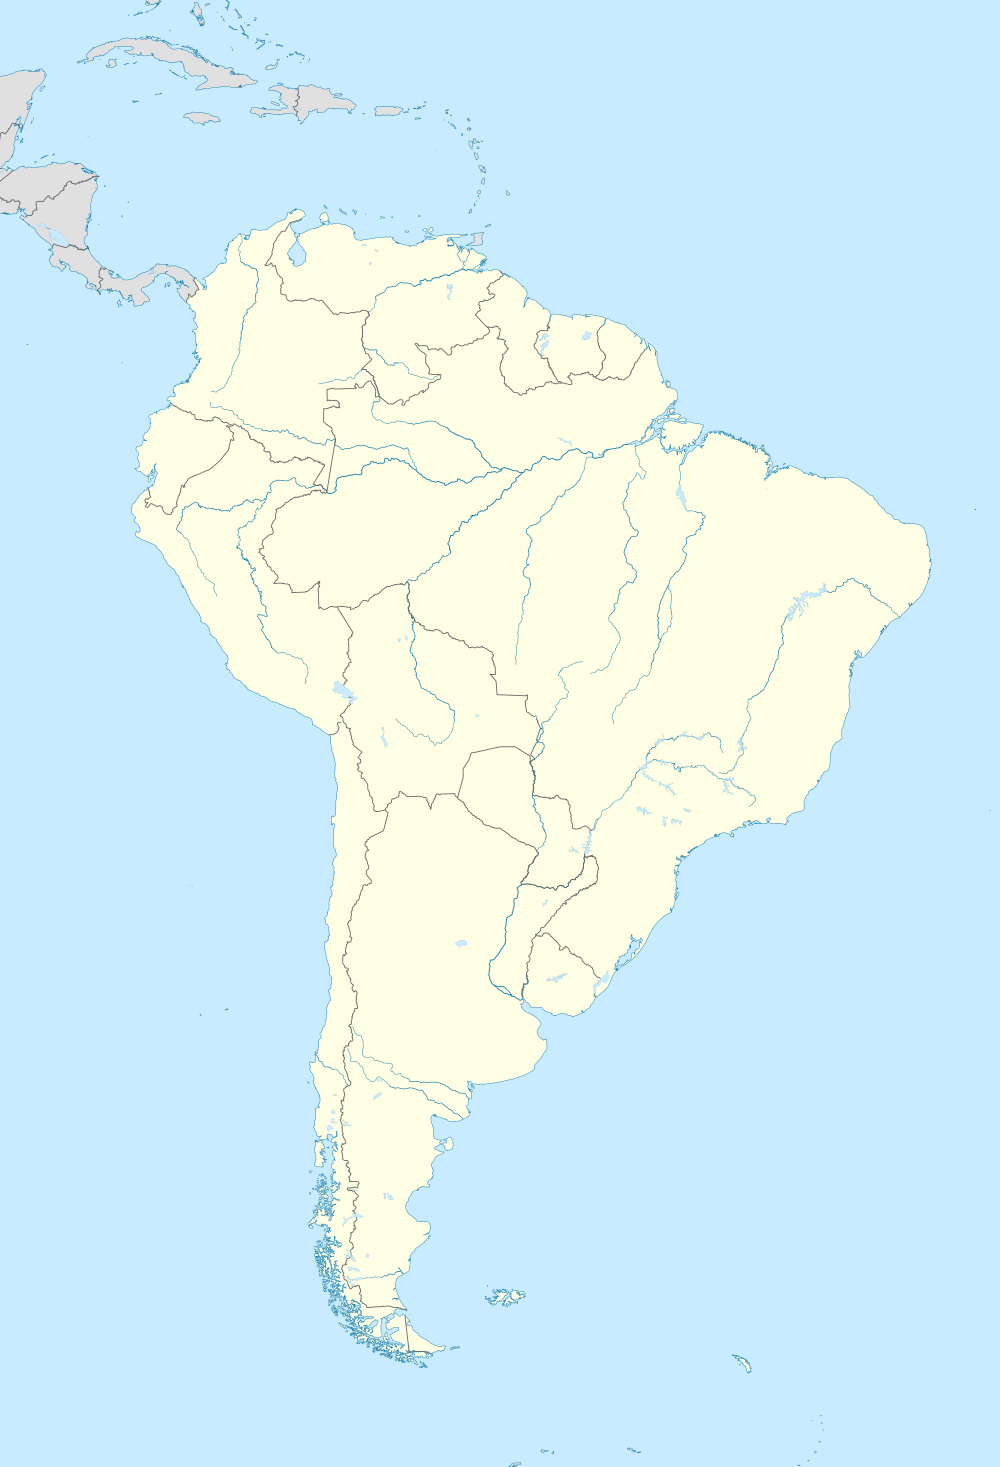 南アメリカにおける各国の観測史上最低気温を観測した場所。×印で示したのは南アメリカ全体の観測史上最低気温を観測した場所。の位置（南アメリカ内）